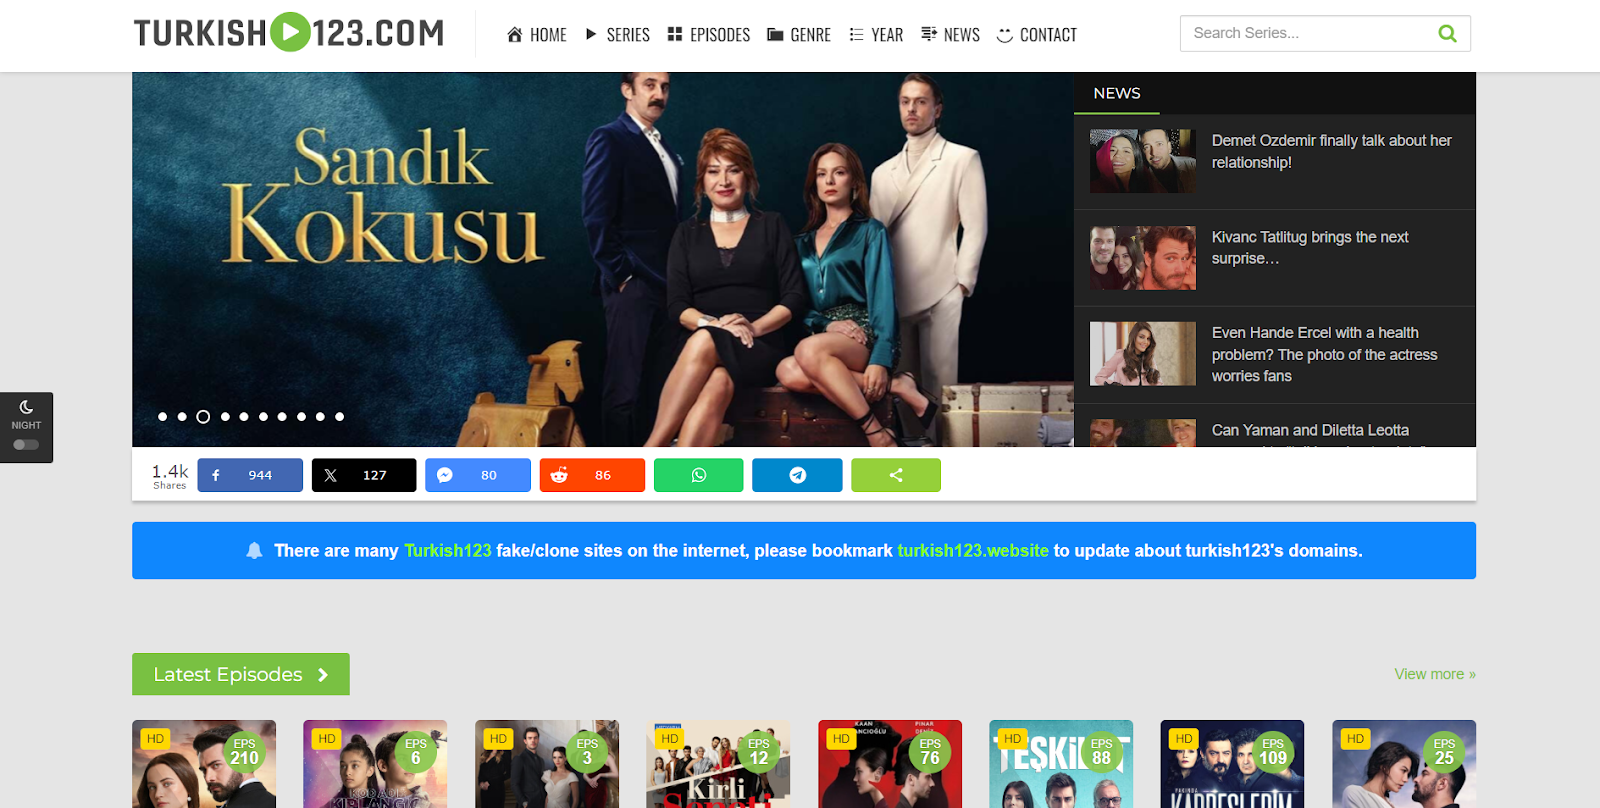 turkish 123 homepage